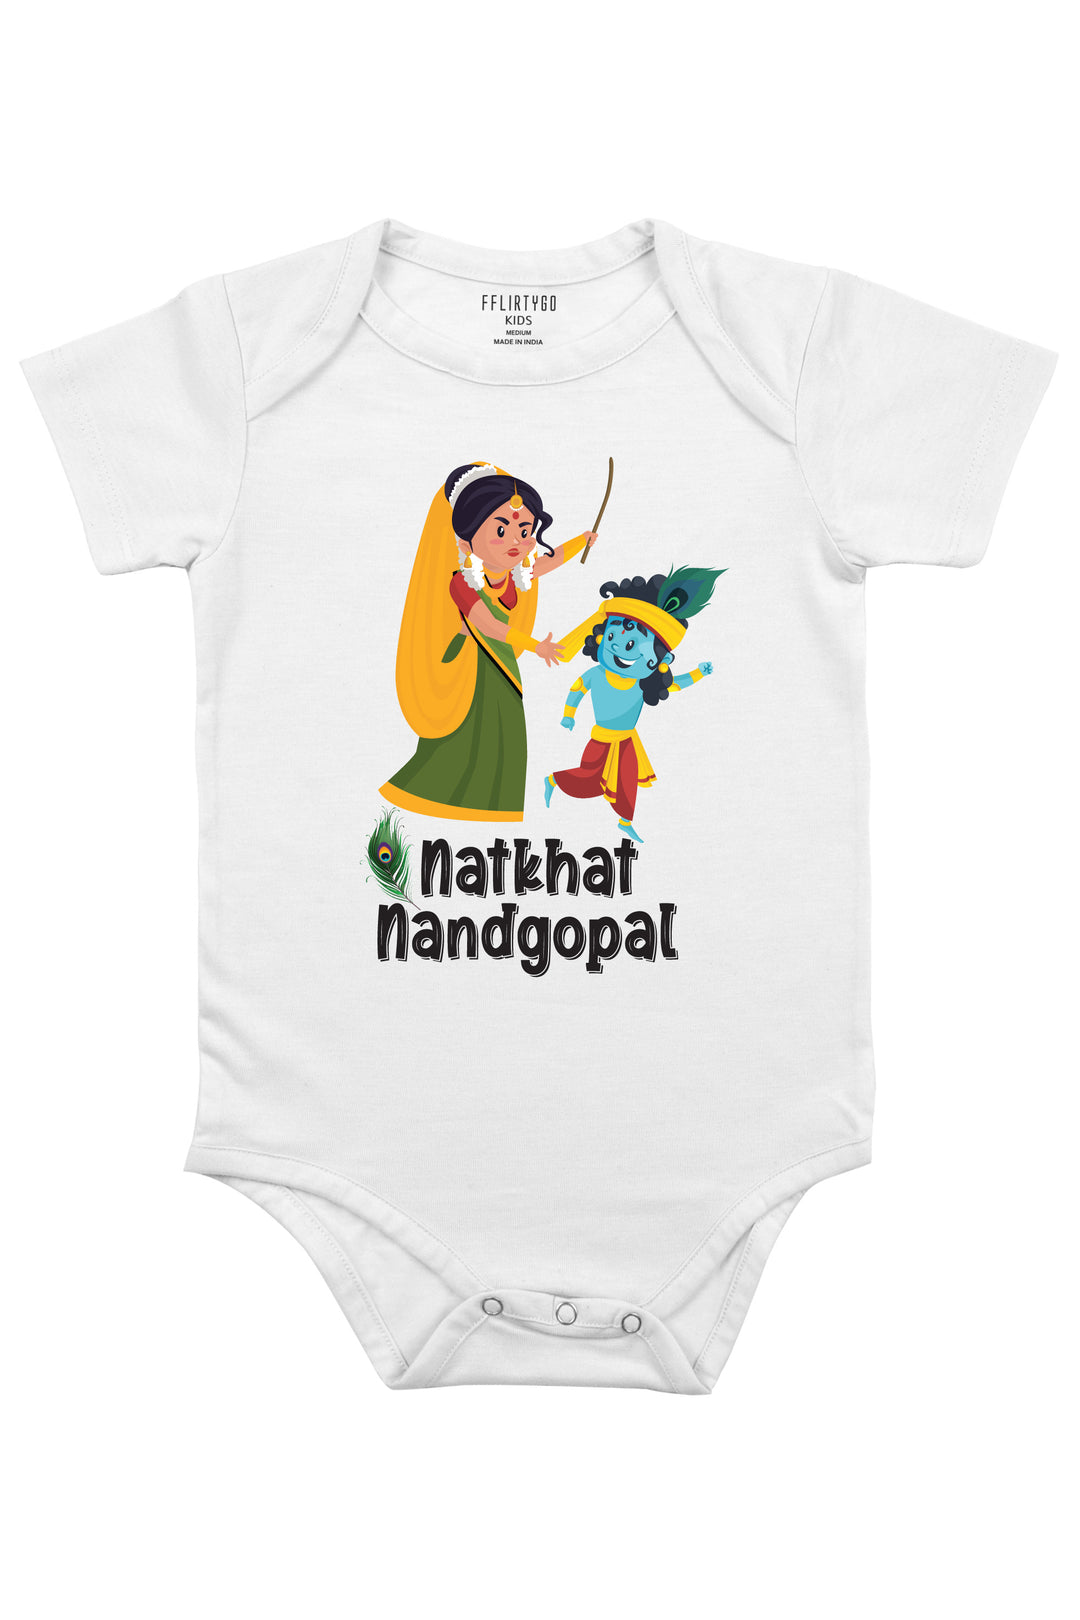 Natkhat Nandgopal Baby Romper | Onesies